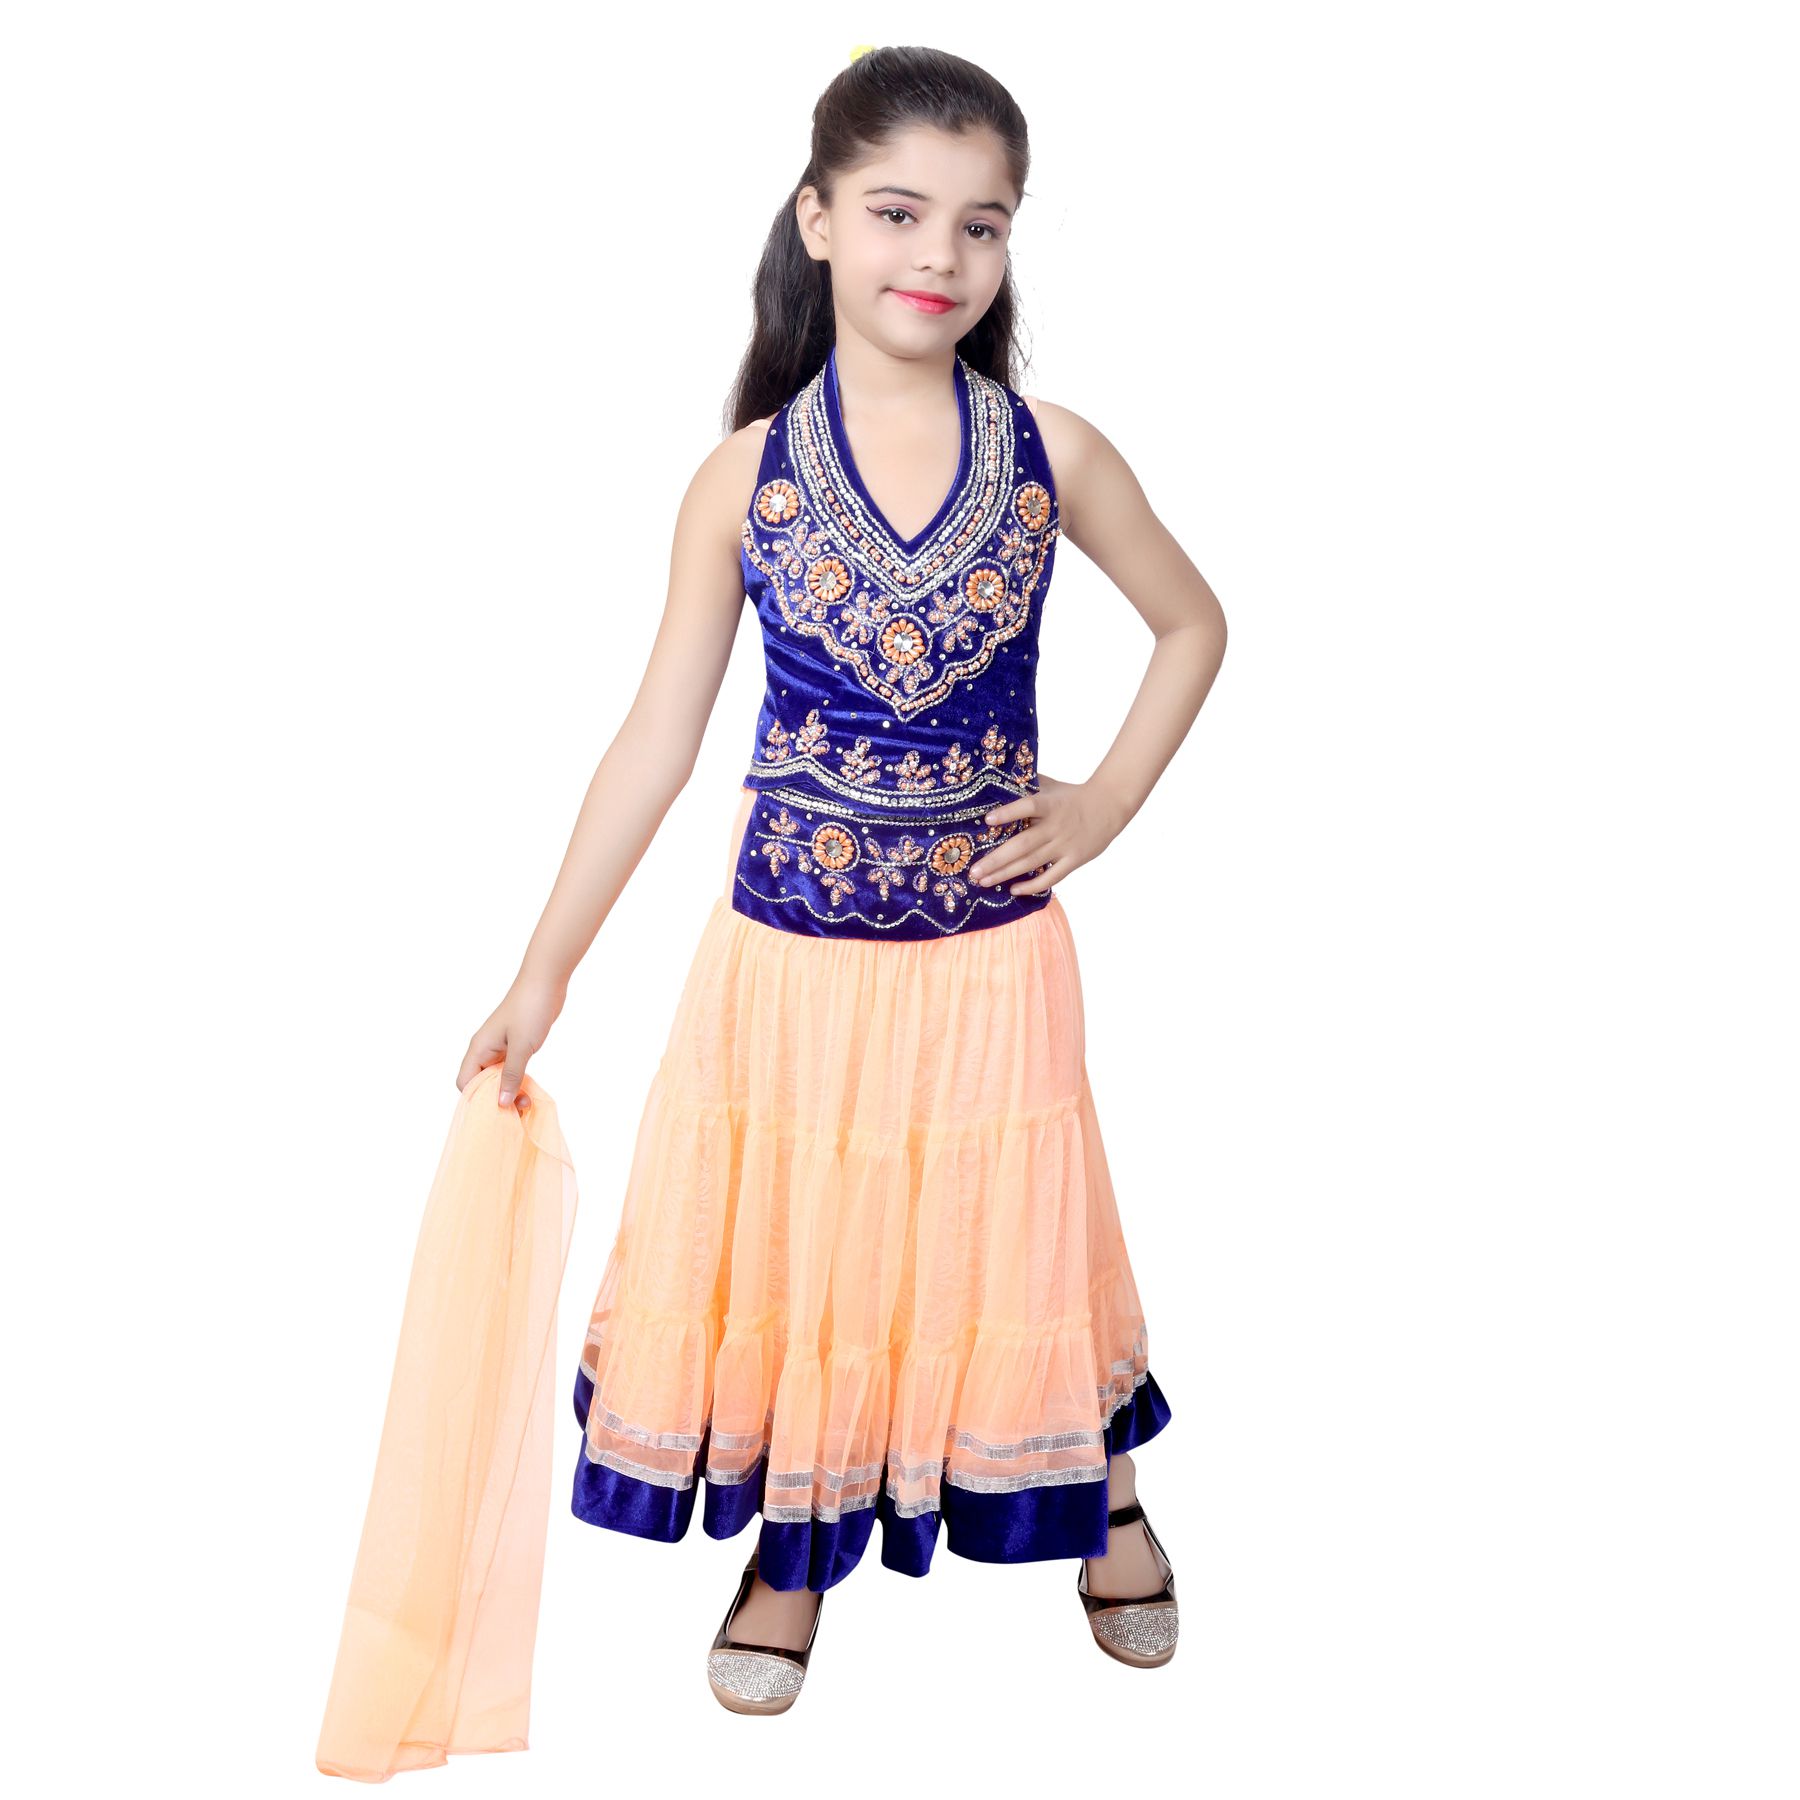 lancha dress for girl